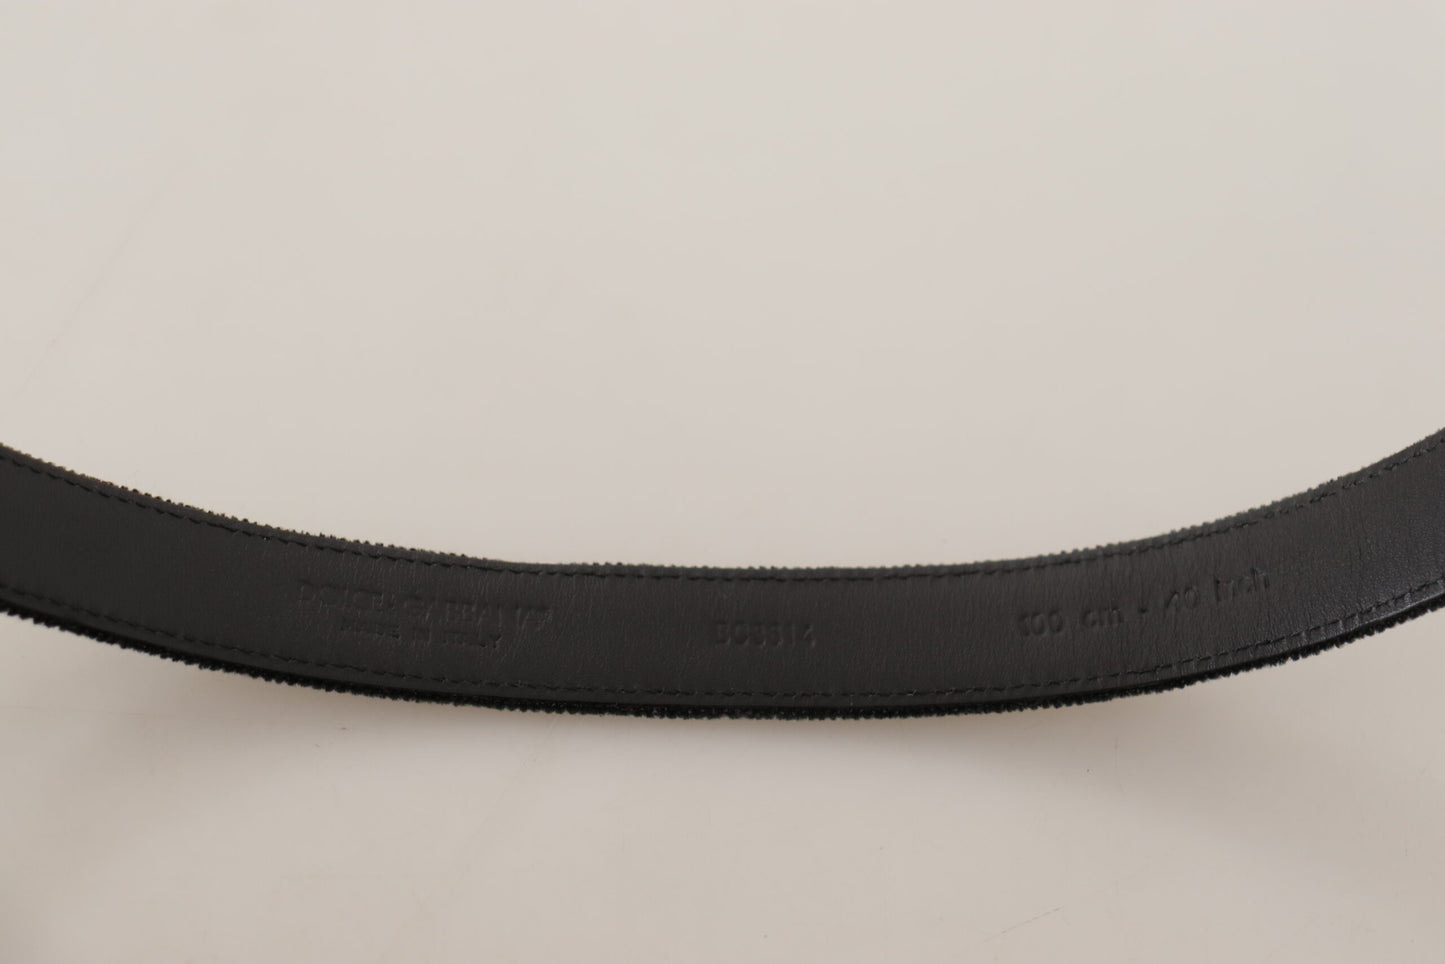 Elegant Black Velvet Designer Belt